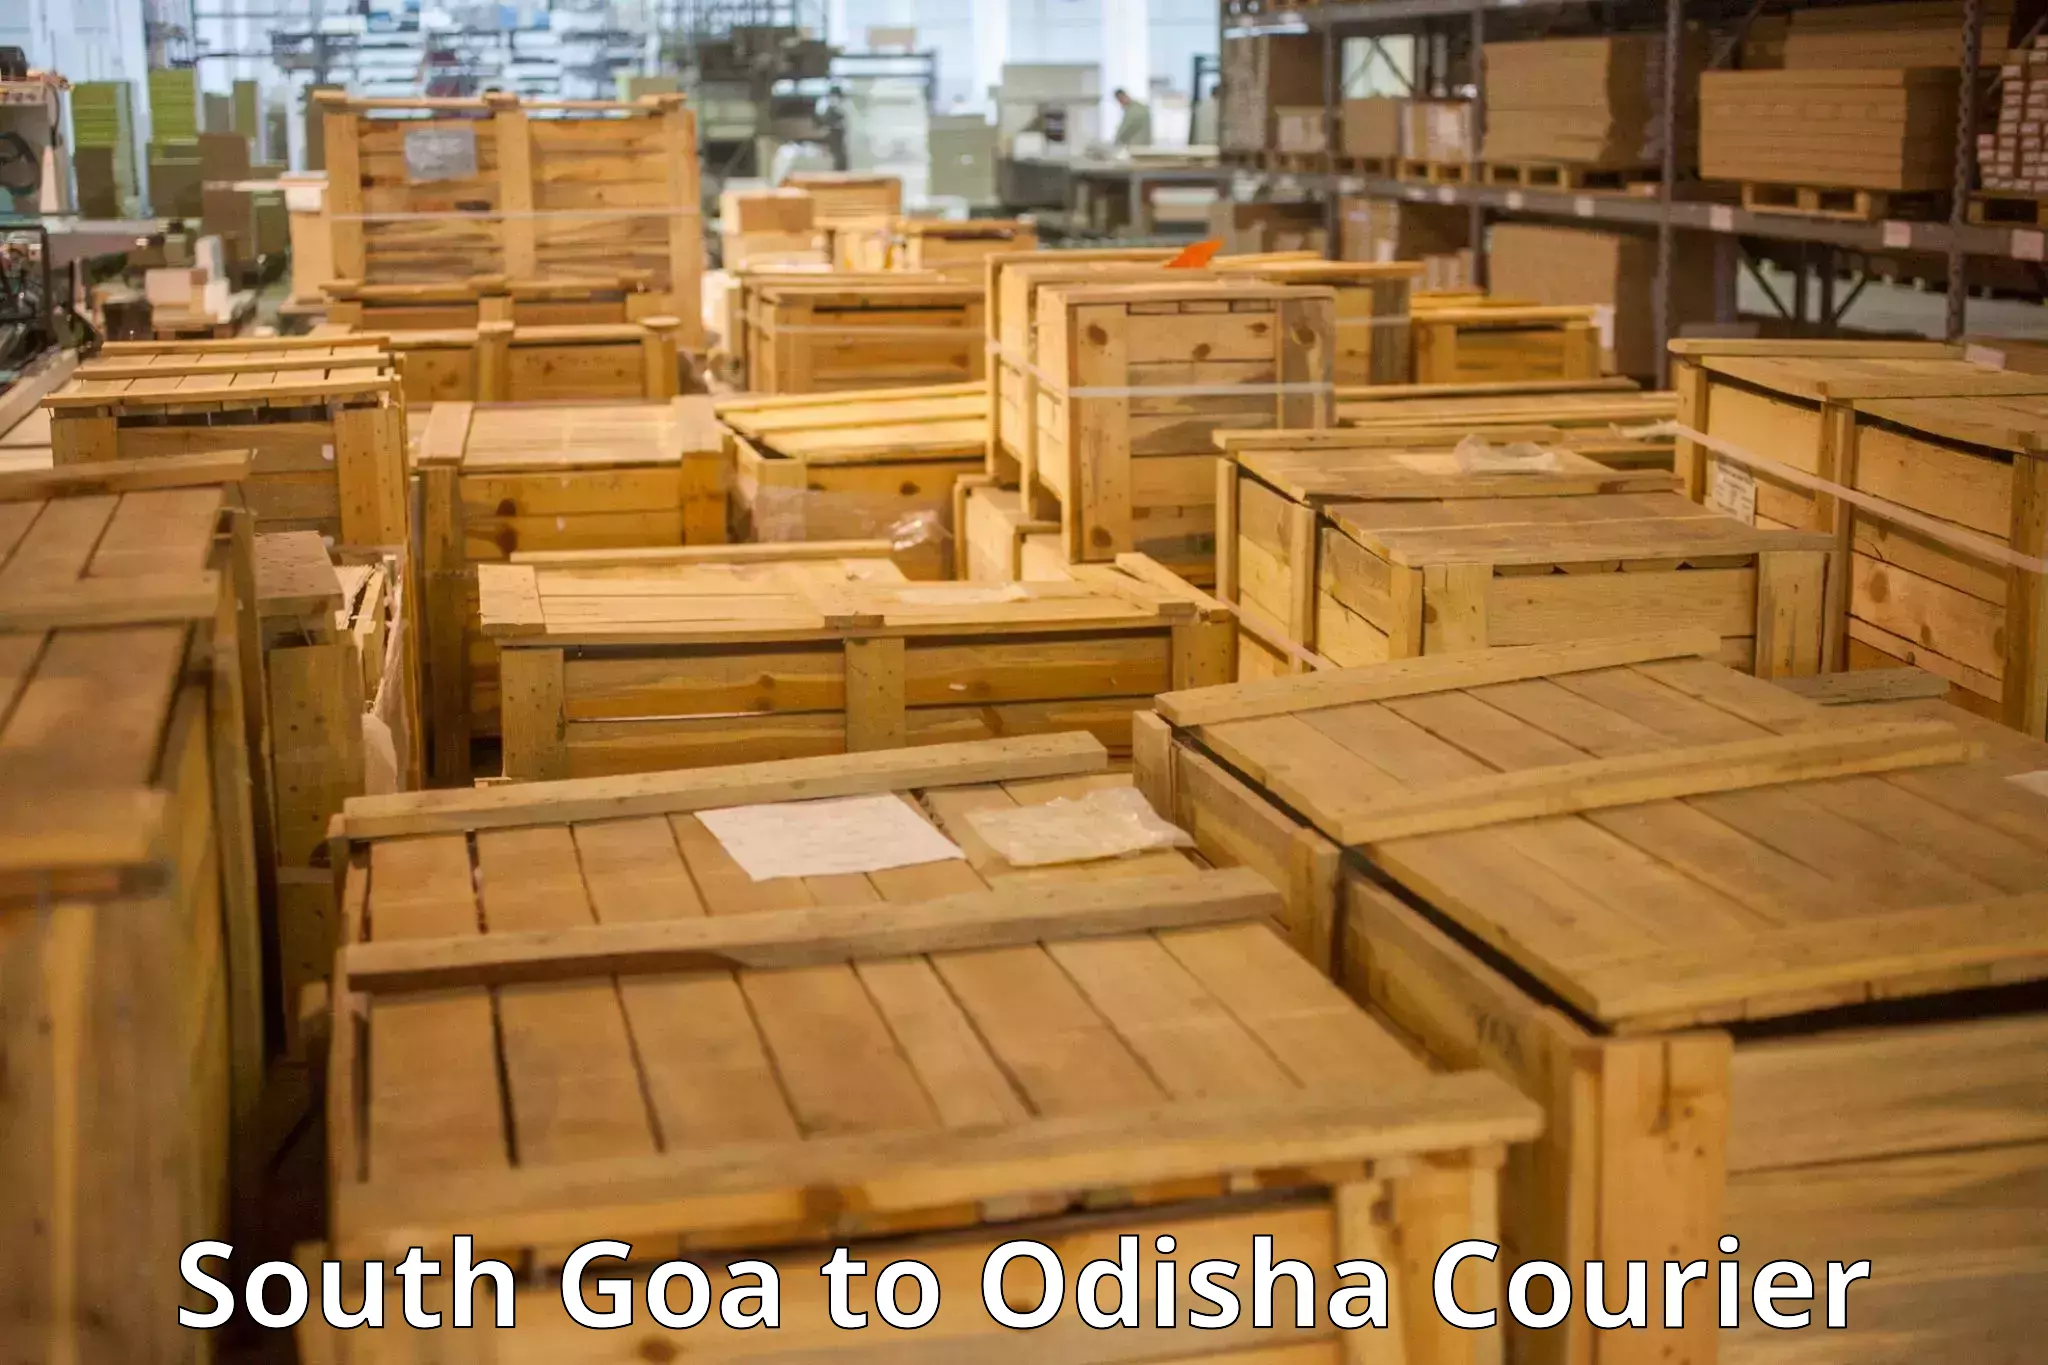 Luggage transport consultancy South Goa to Mahakalapada